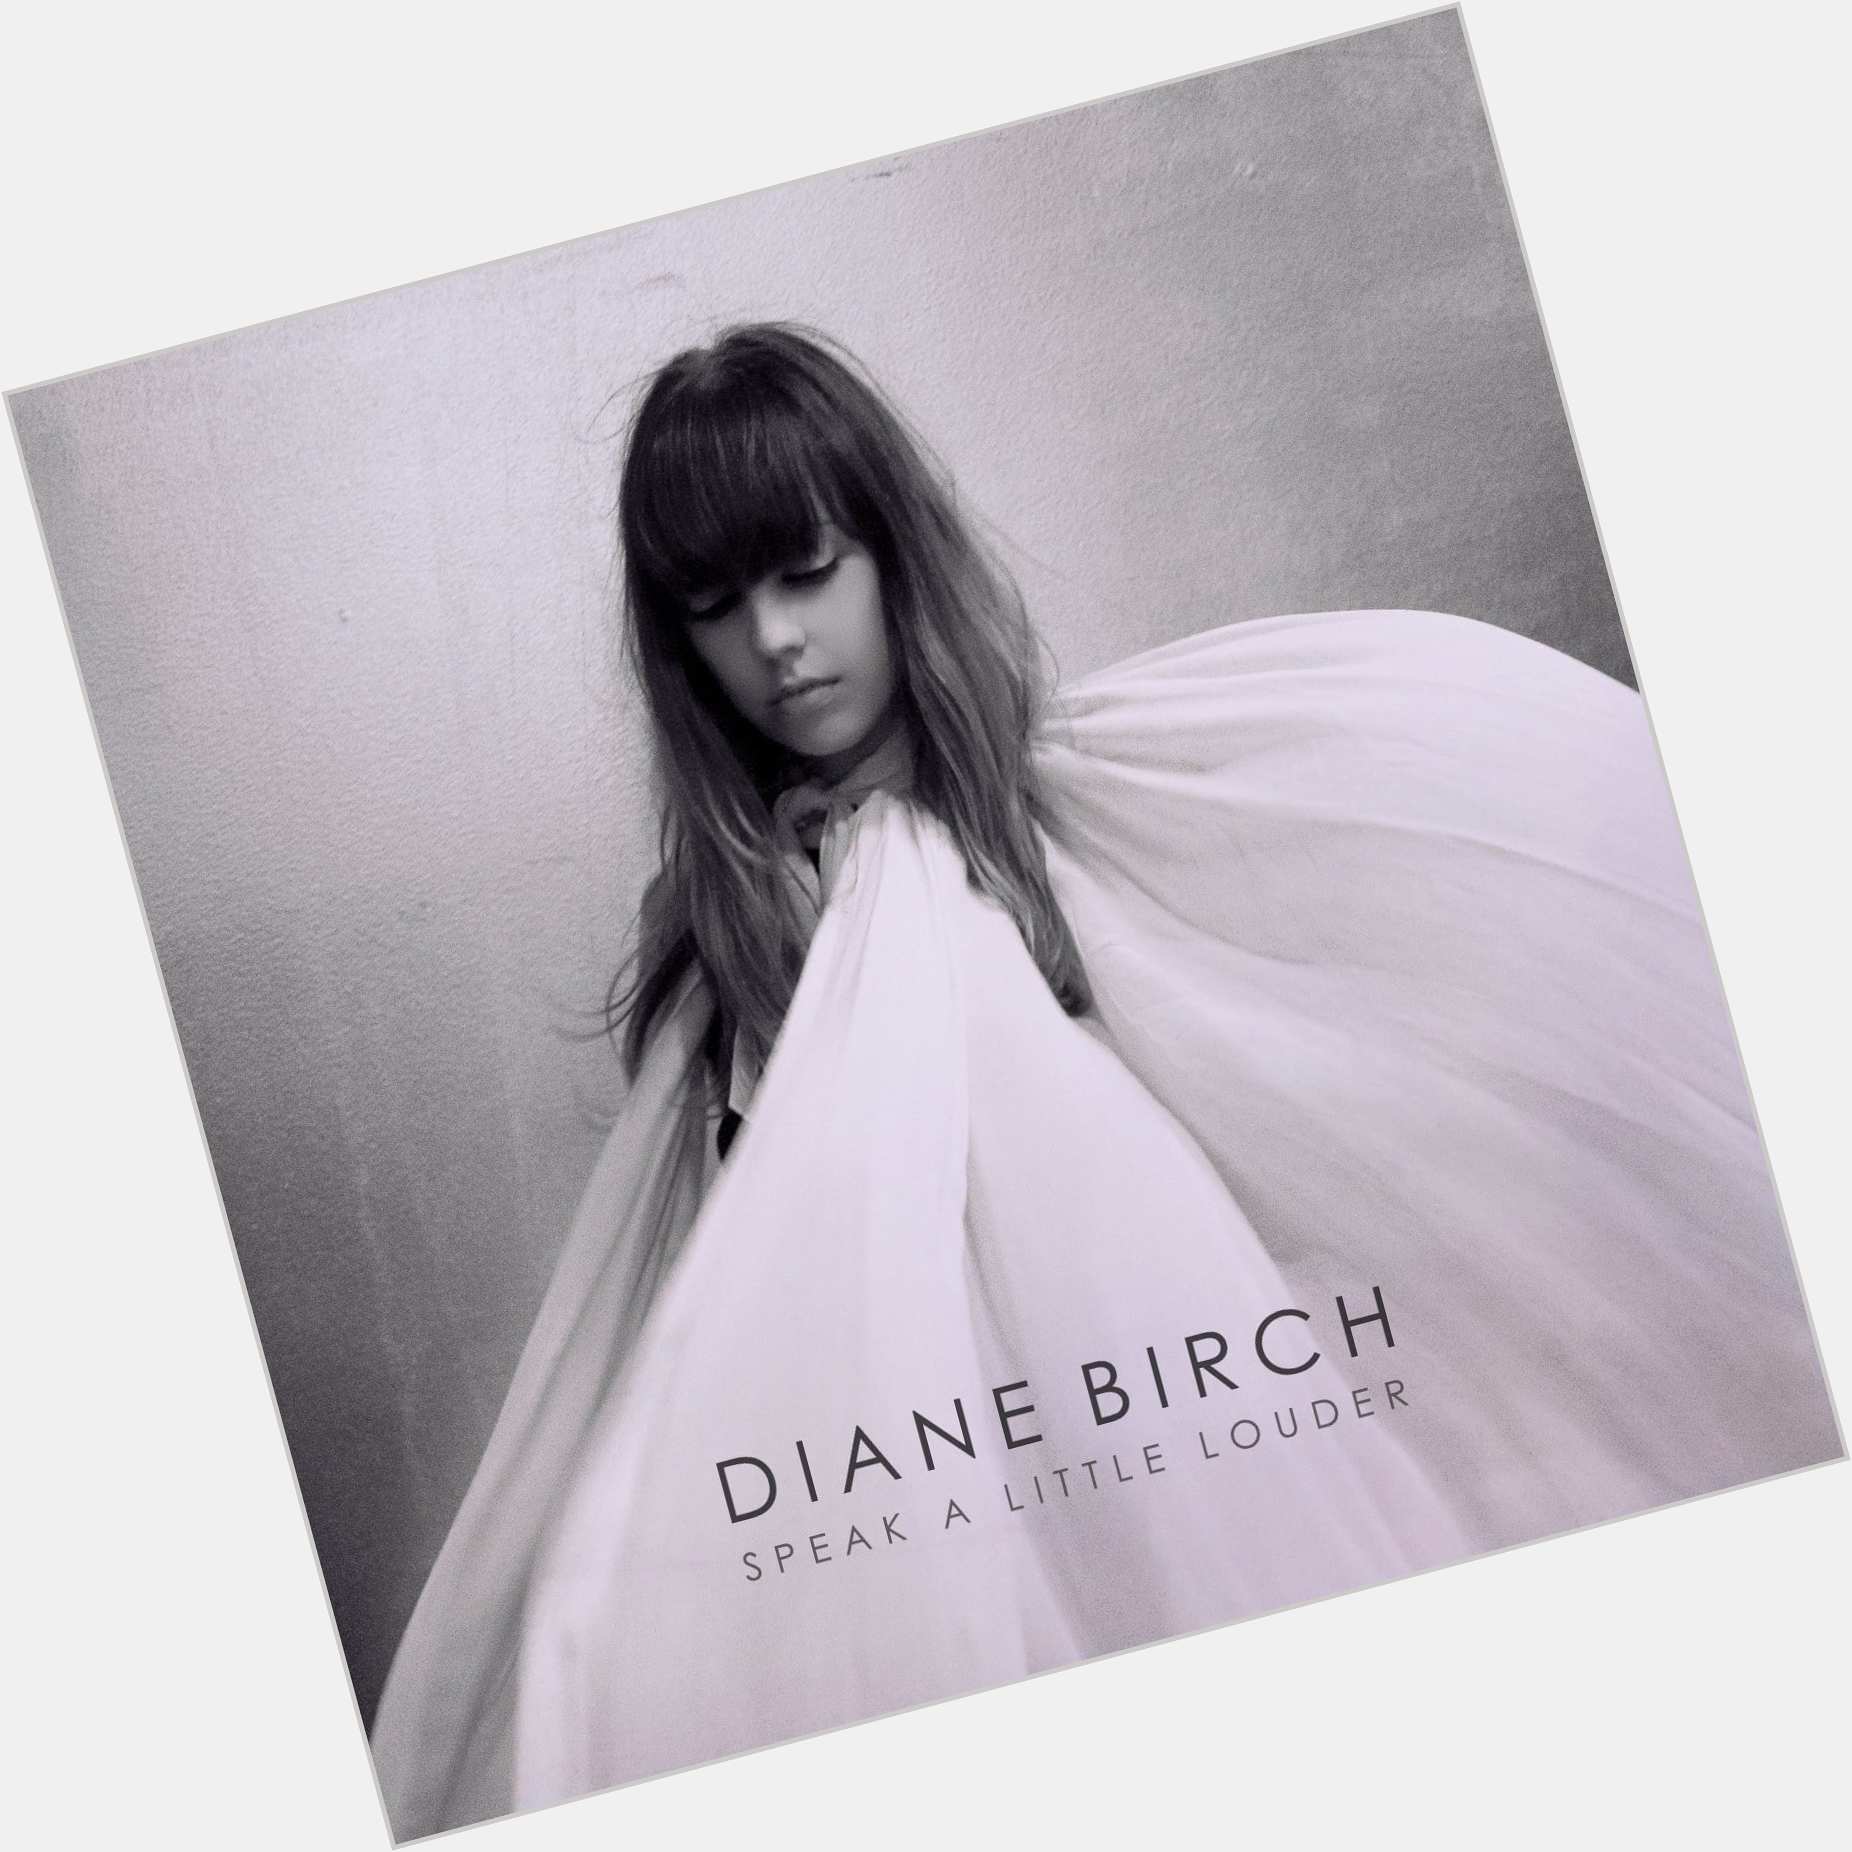 Diane Birch body 8